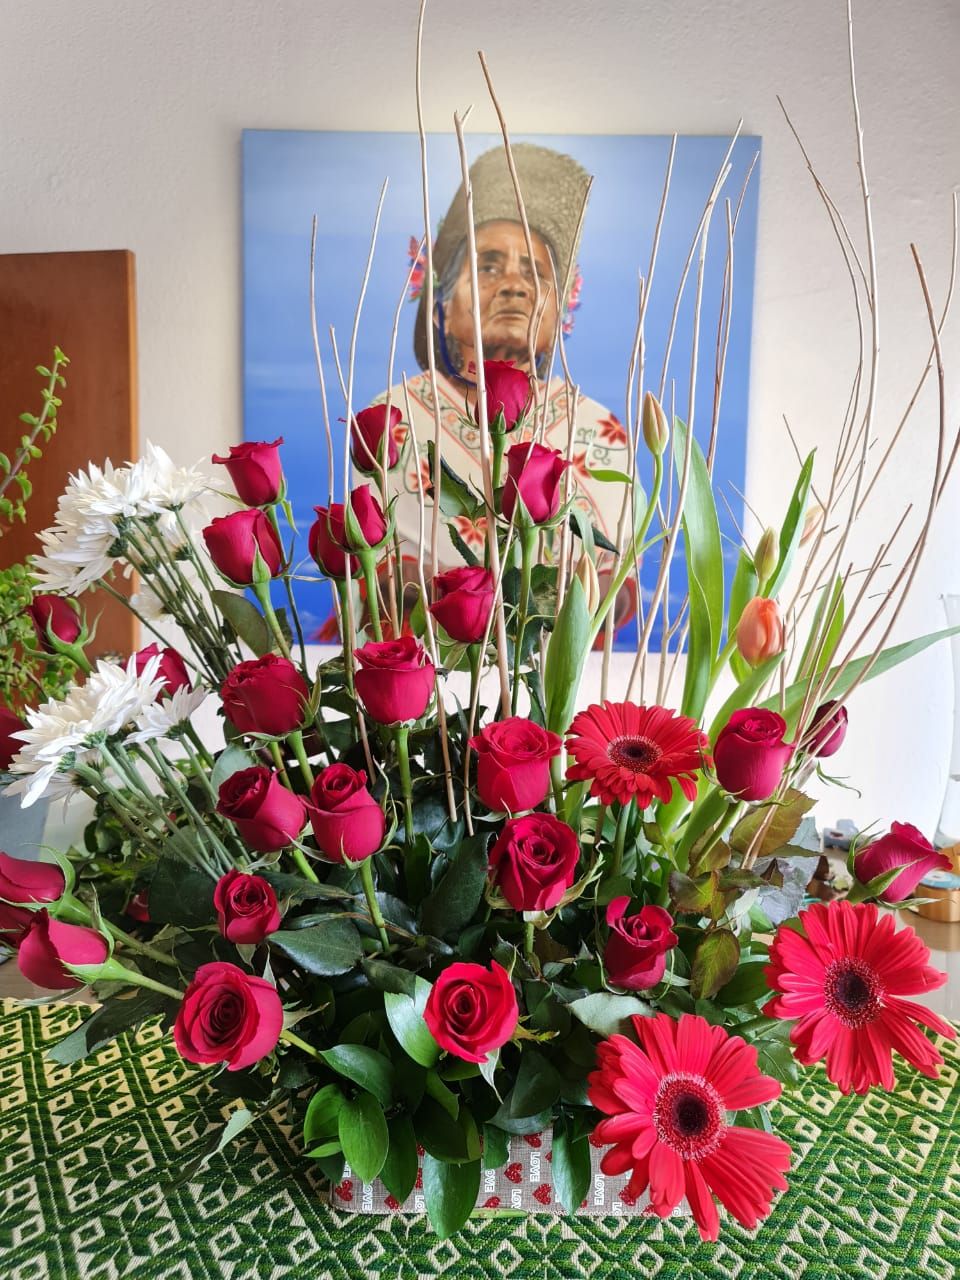 Invitan a crear en casa diseños florales y apoyar a floricultores mexiquenses